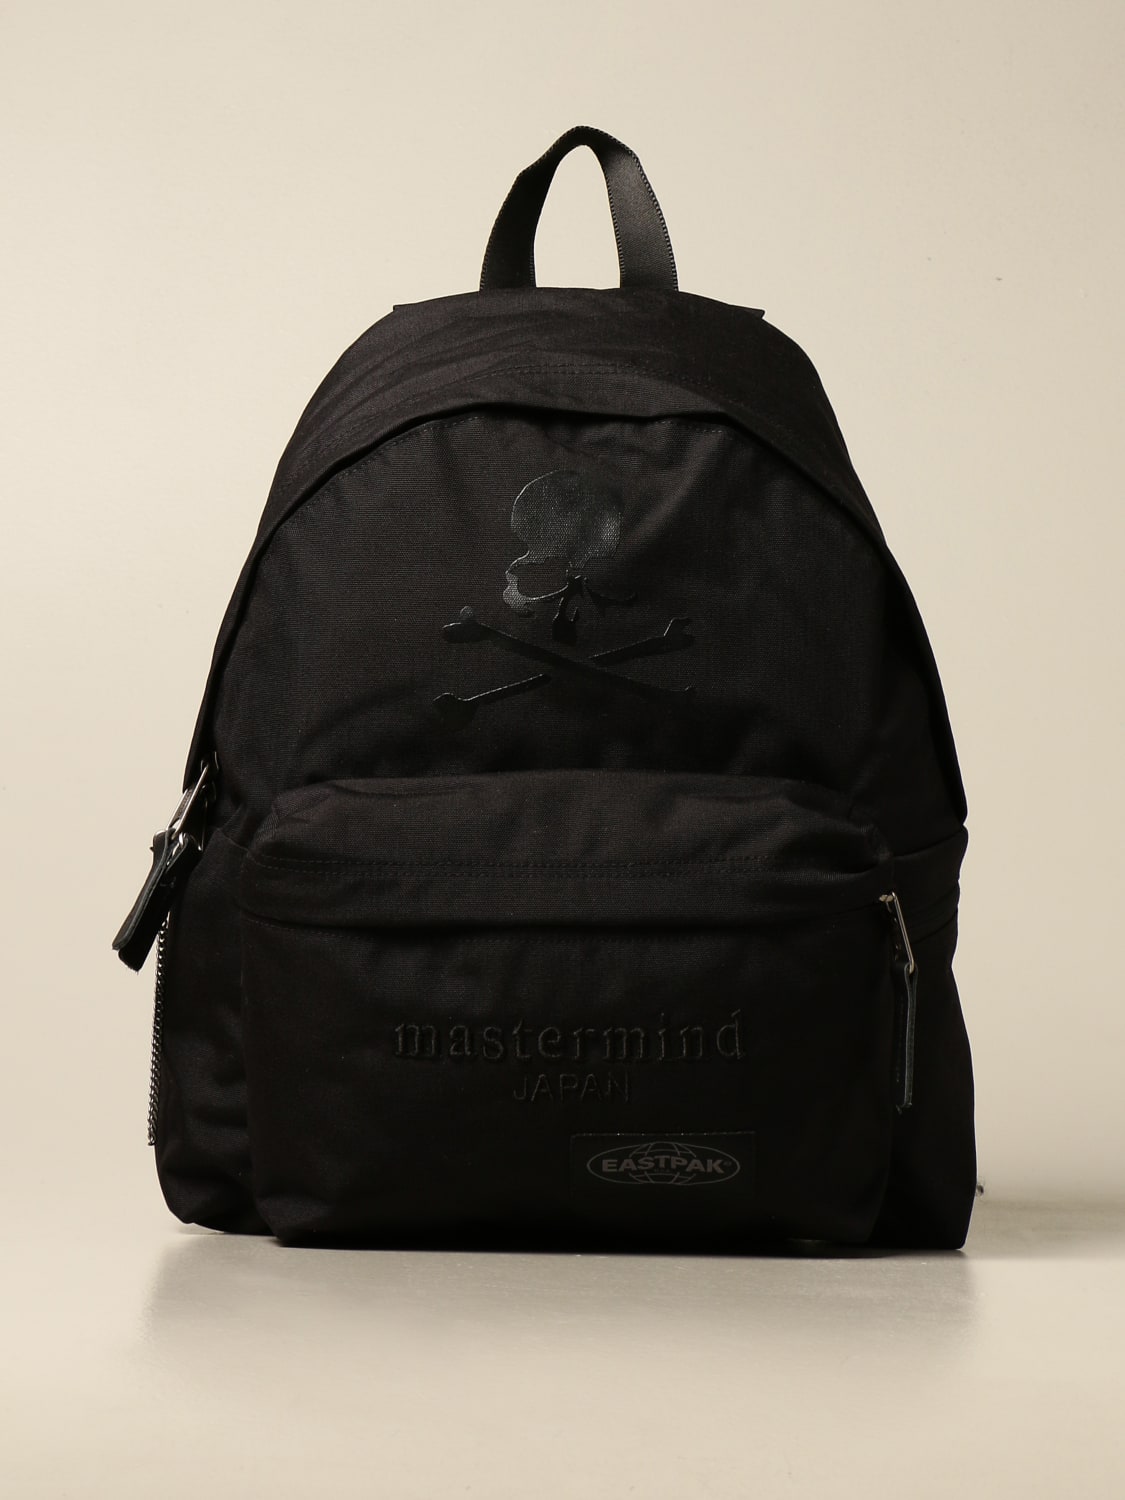 Mastermind japan Eastpak backpack